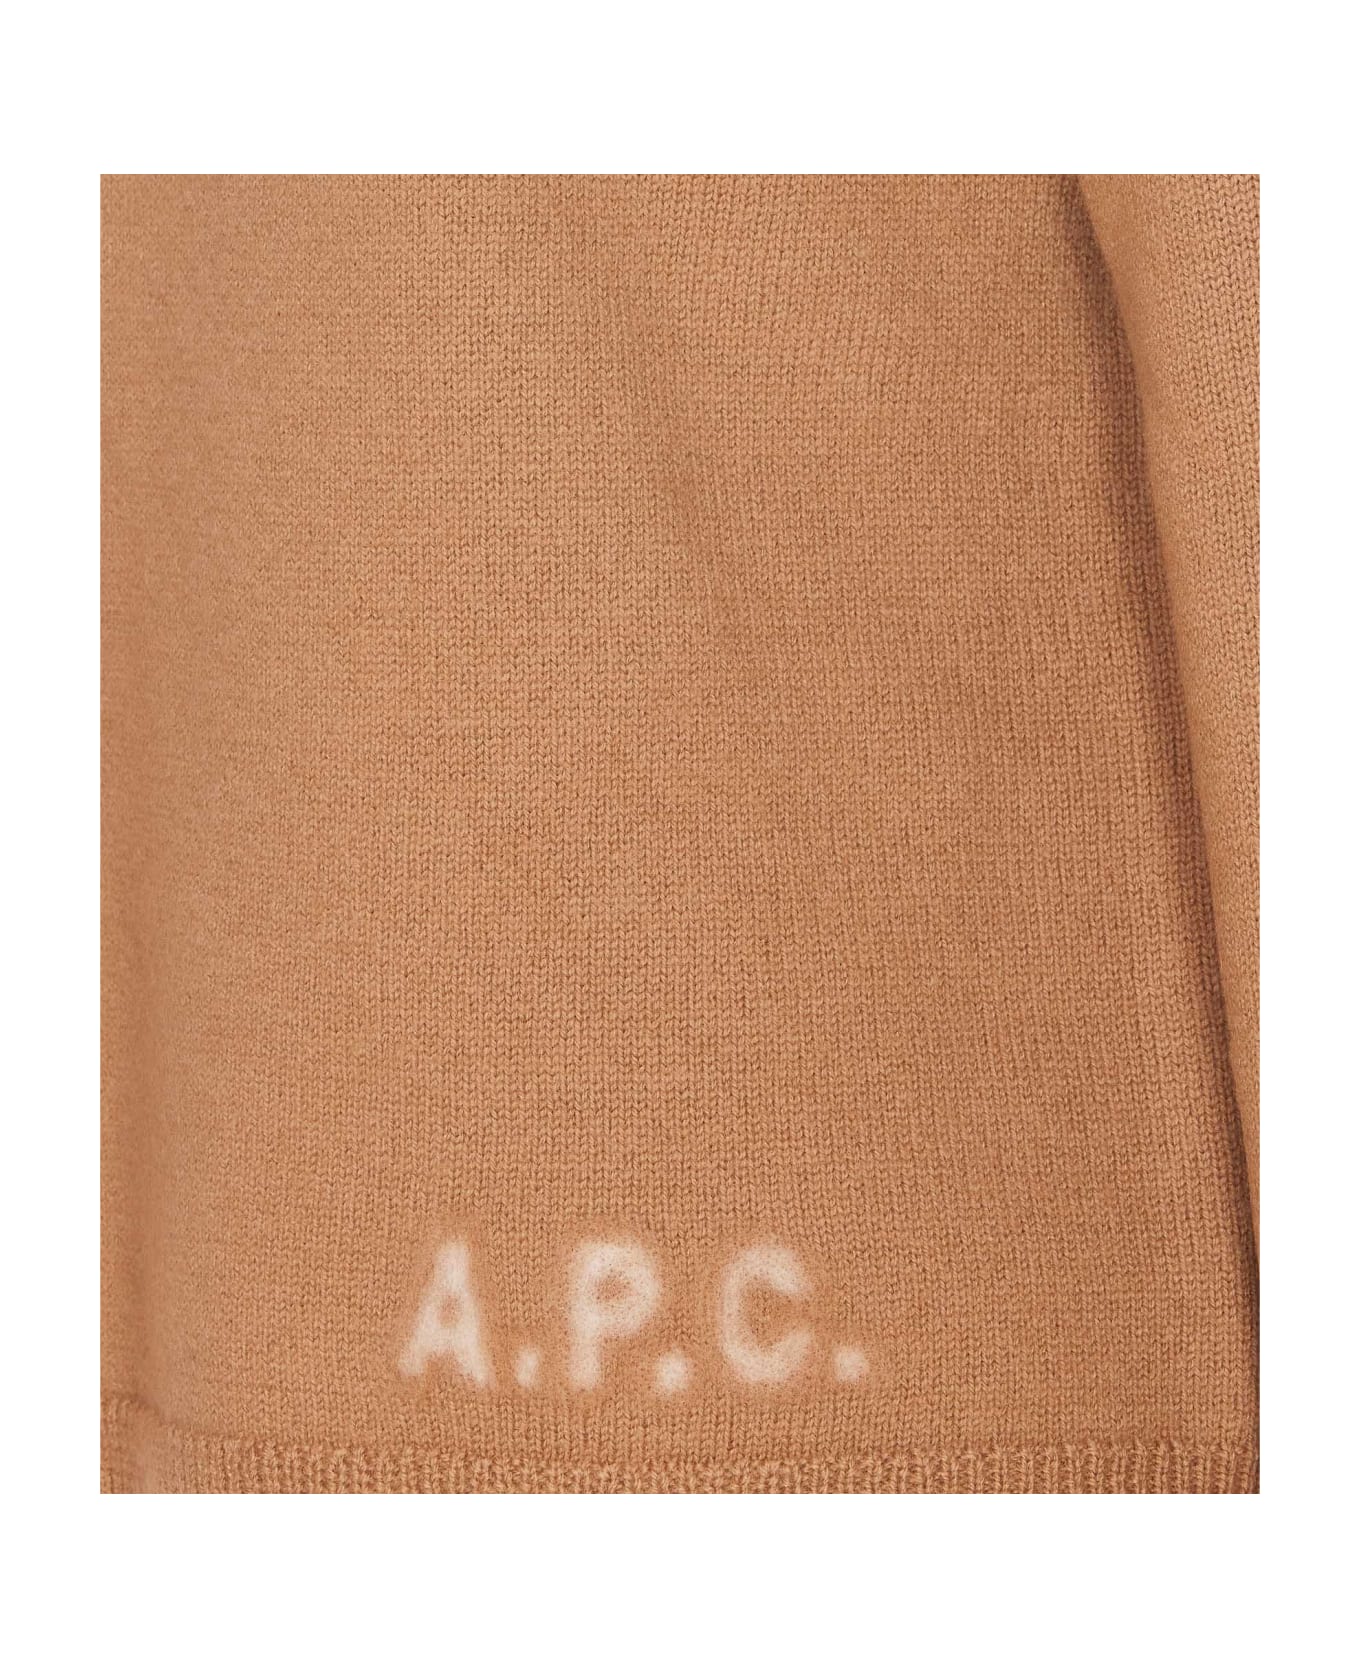 A.P.C. Oda Pullover - Tcb Camel Ecru